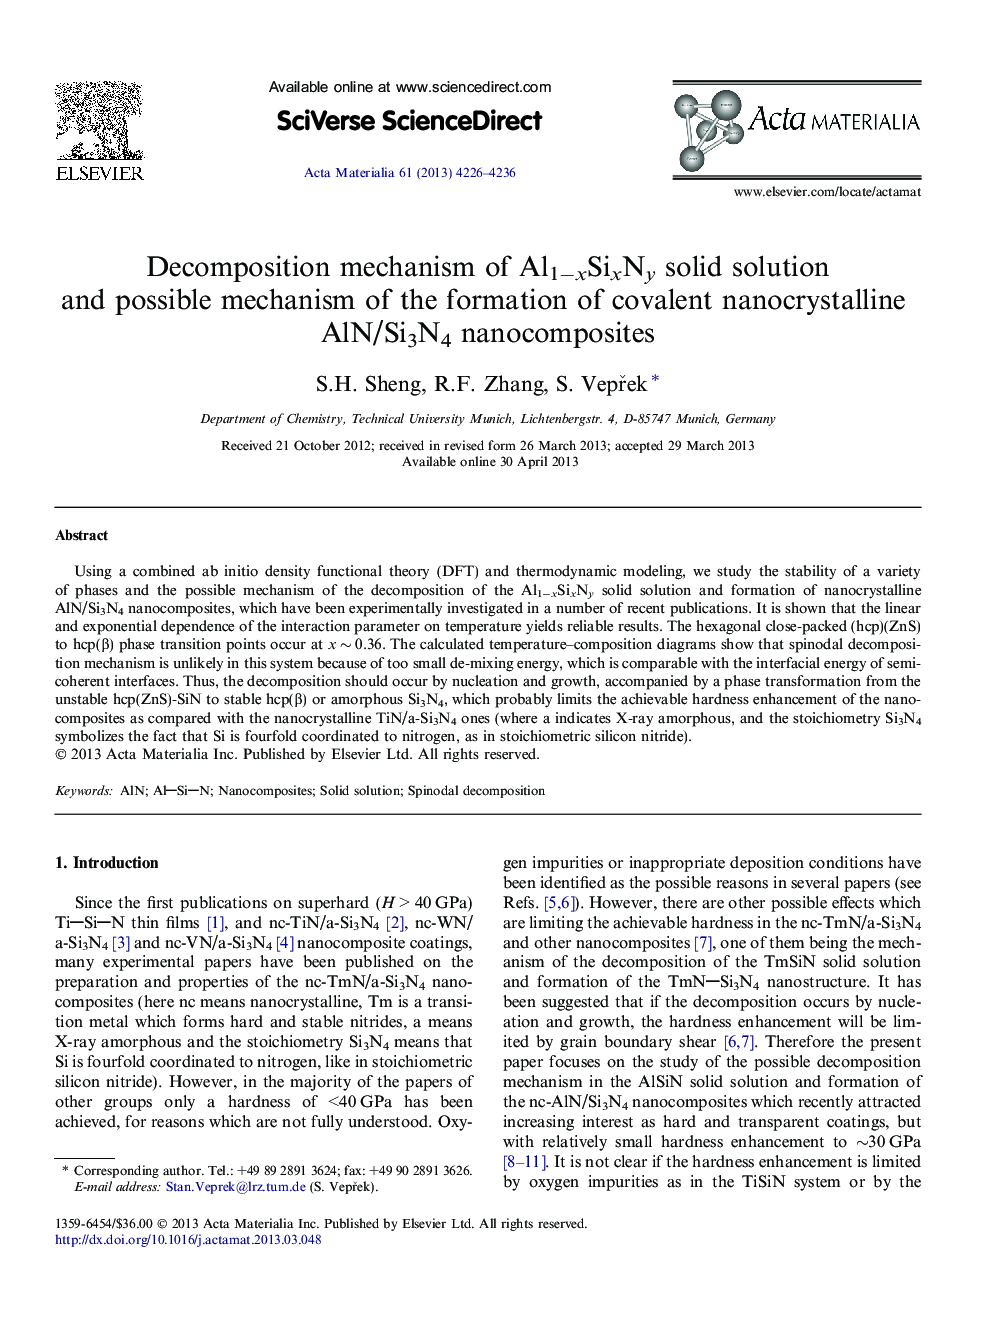 Decomposition mechanism of Al1âxSixNy solid solution and possible mechanism of the formation of covalent nanocrystalline AlN/Si3N4 nanocomposites